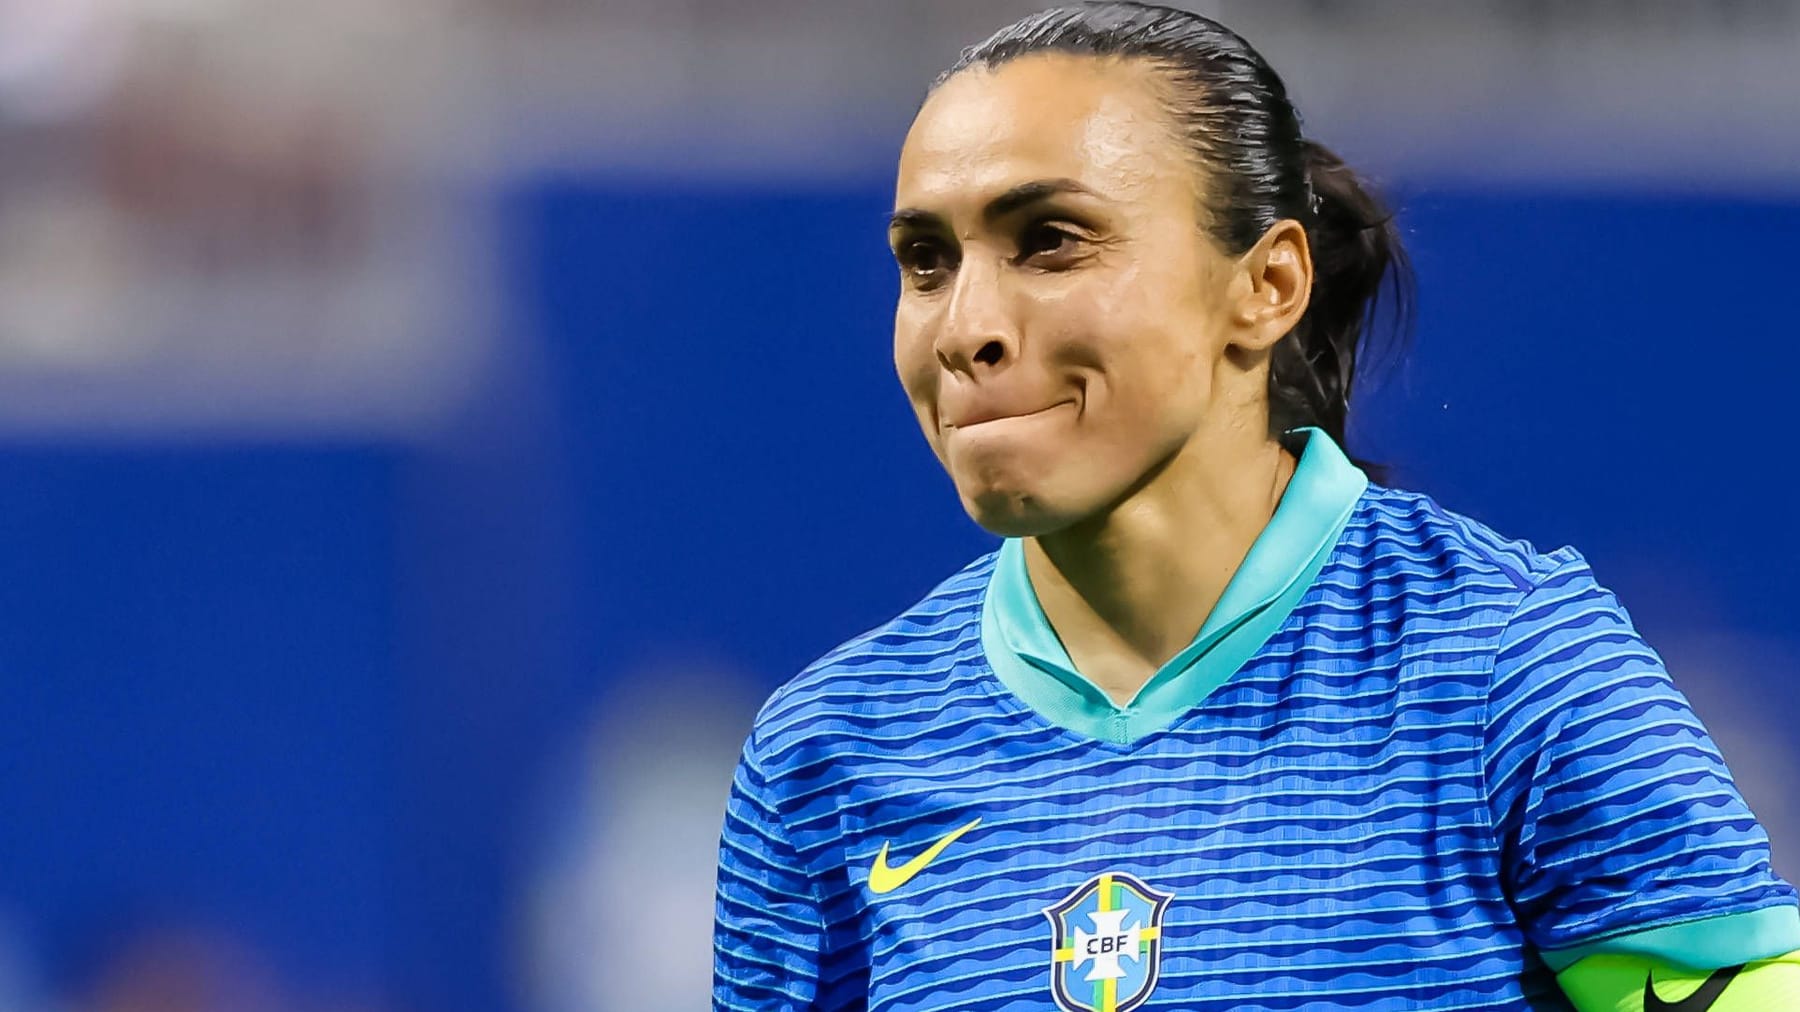 Frauenfußball: Marta tritt aus der "Seleção" zurück